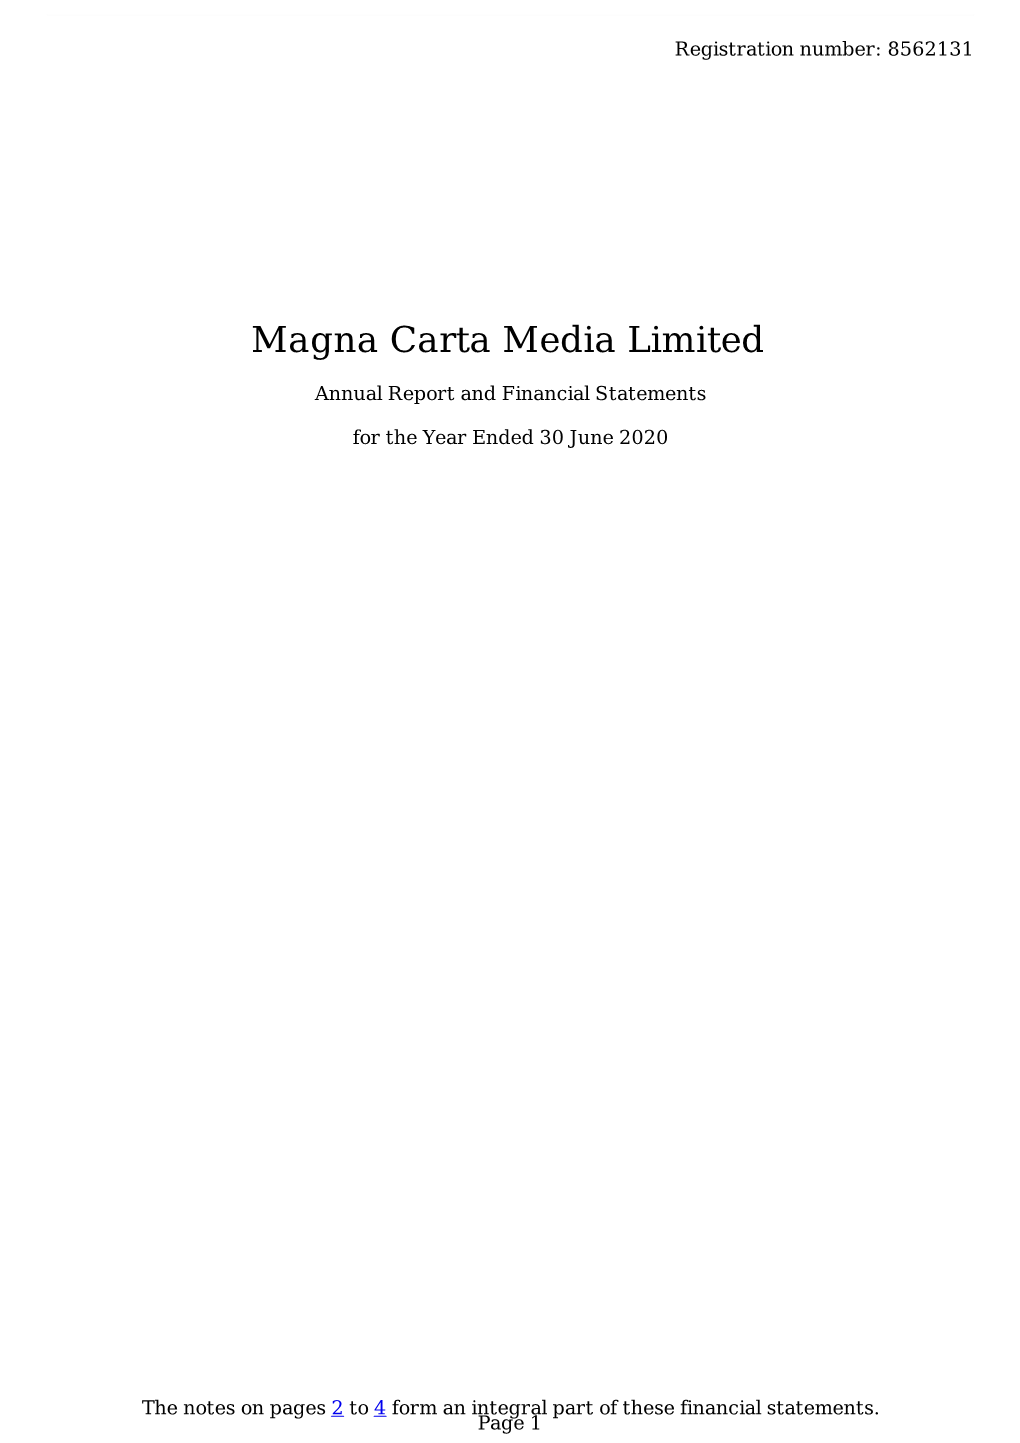 Magna Carta Media Limited